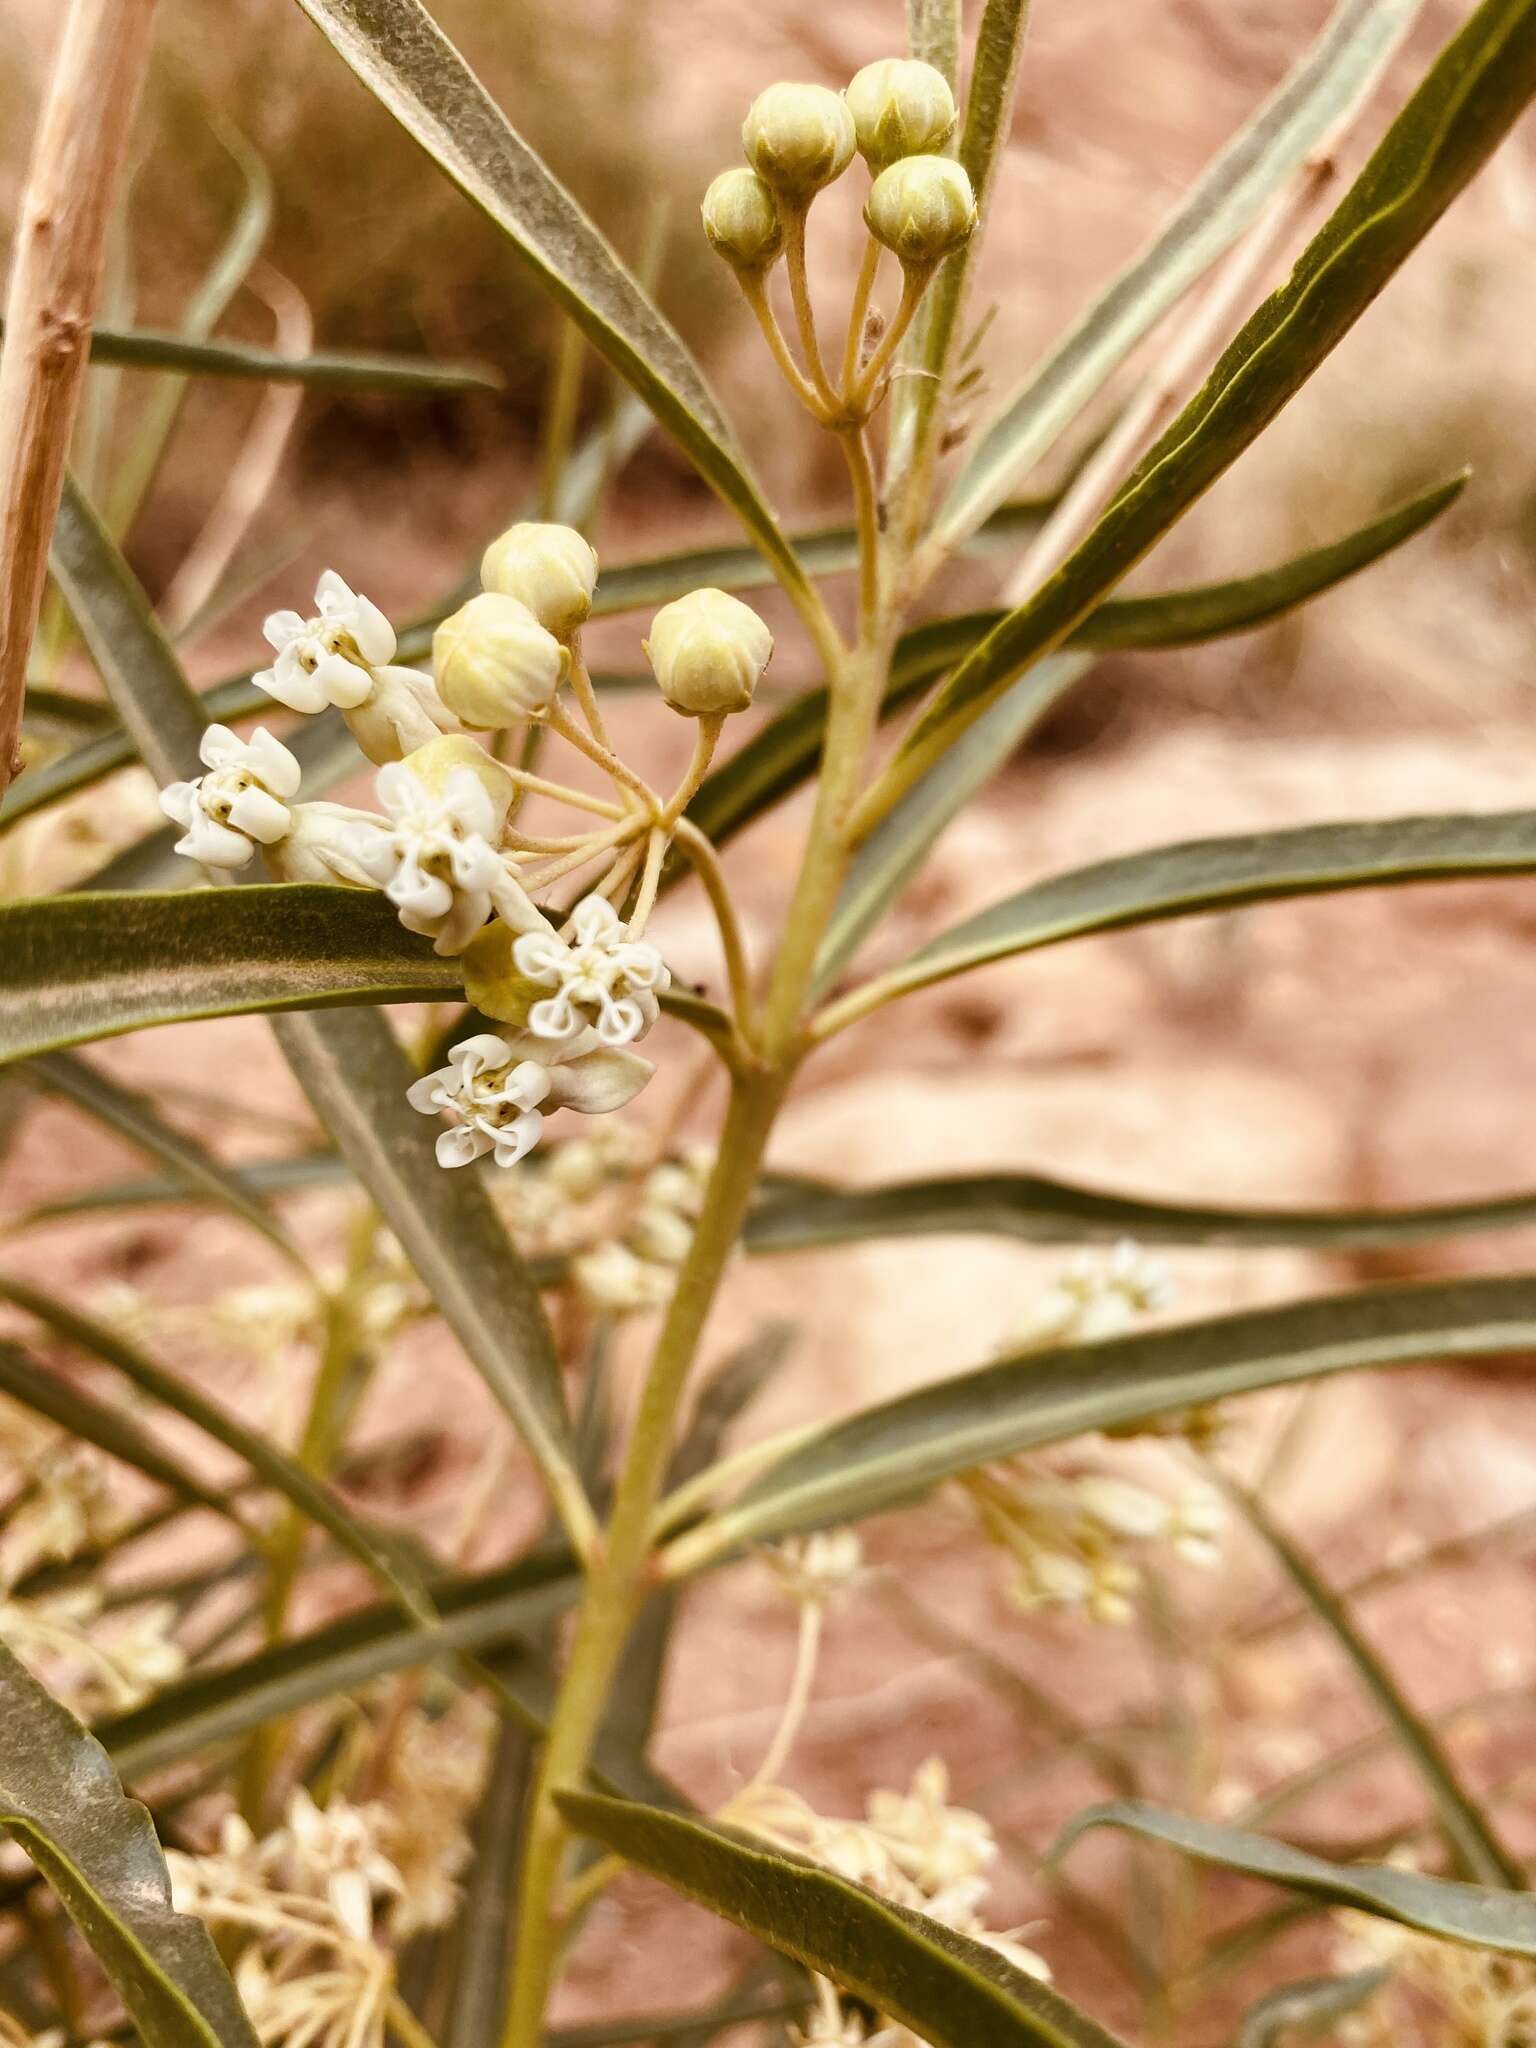 Image of Utah milkweed